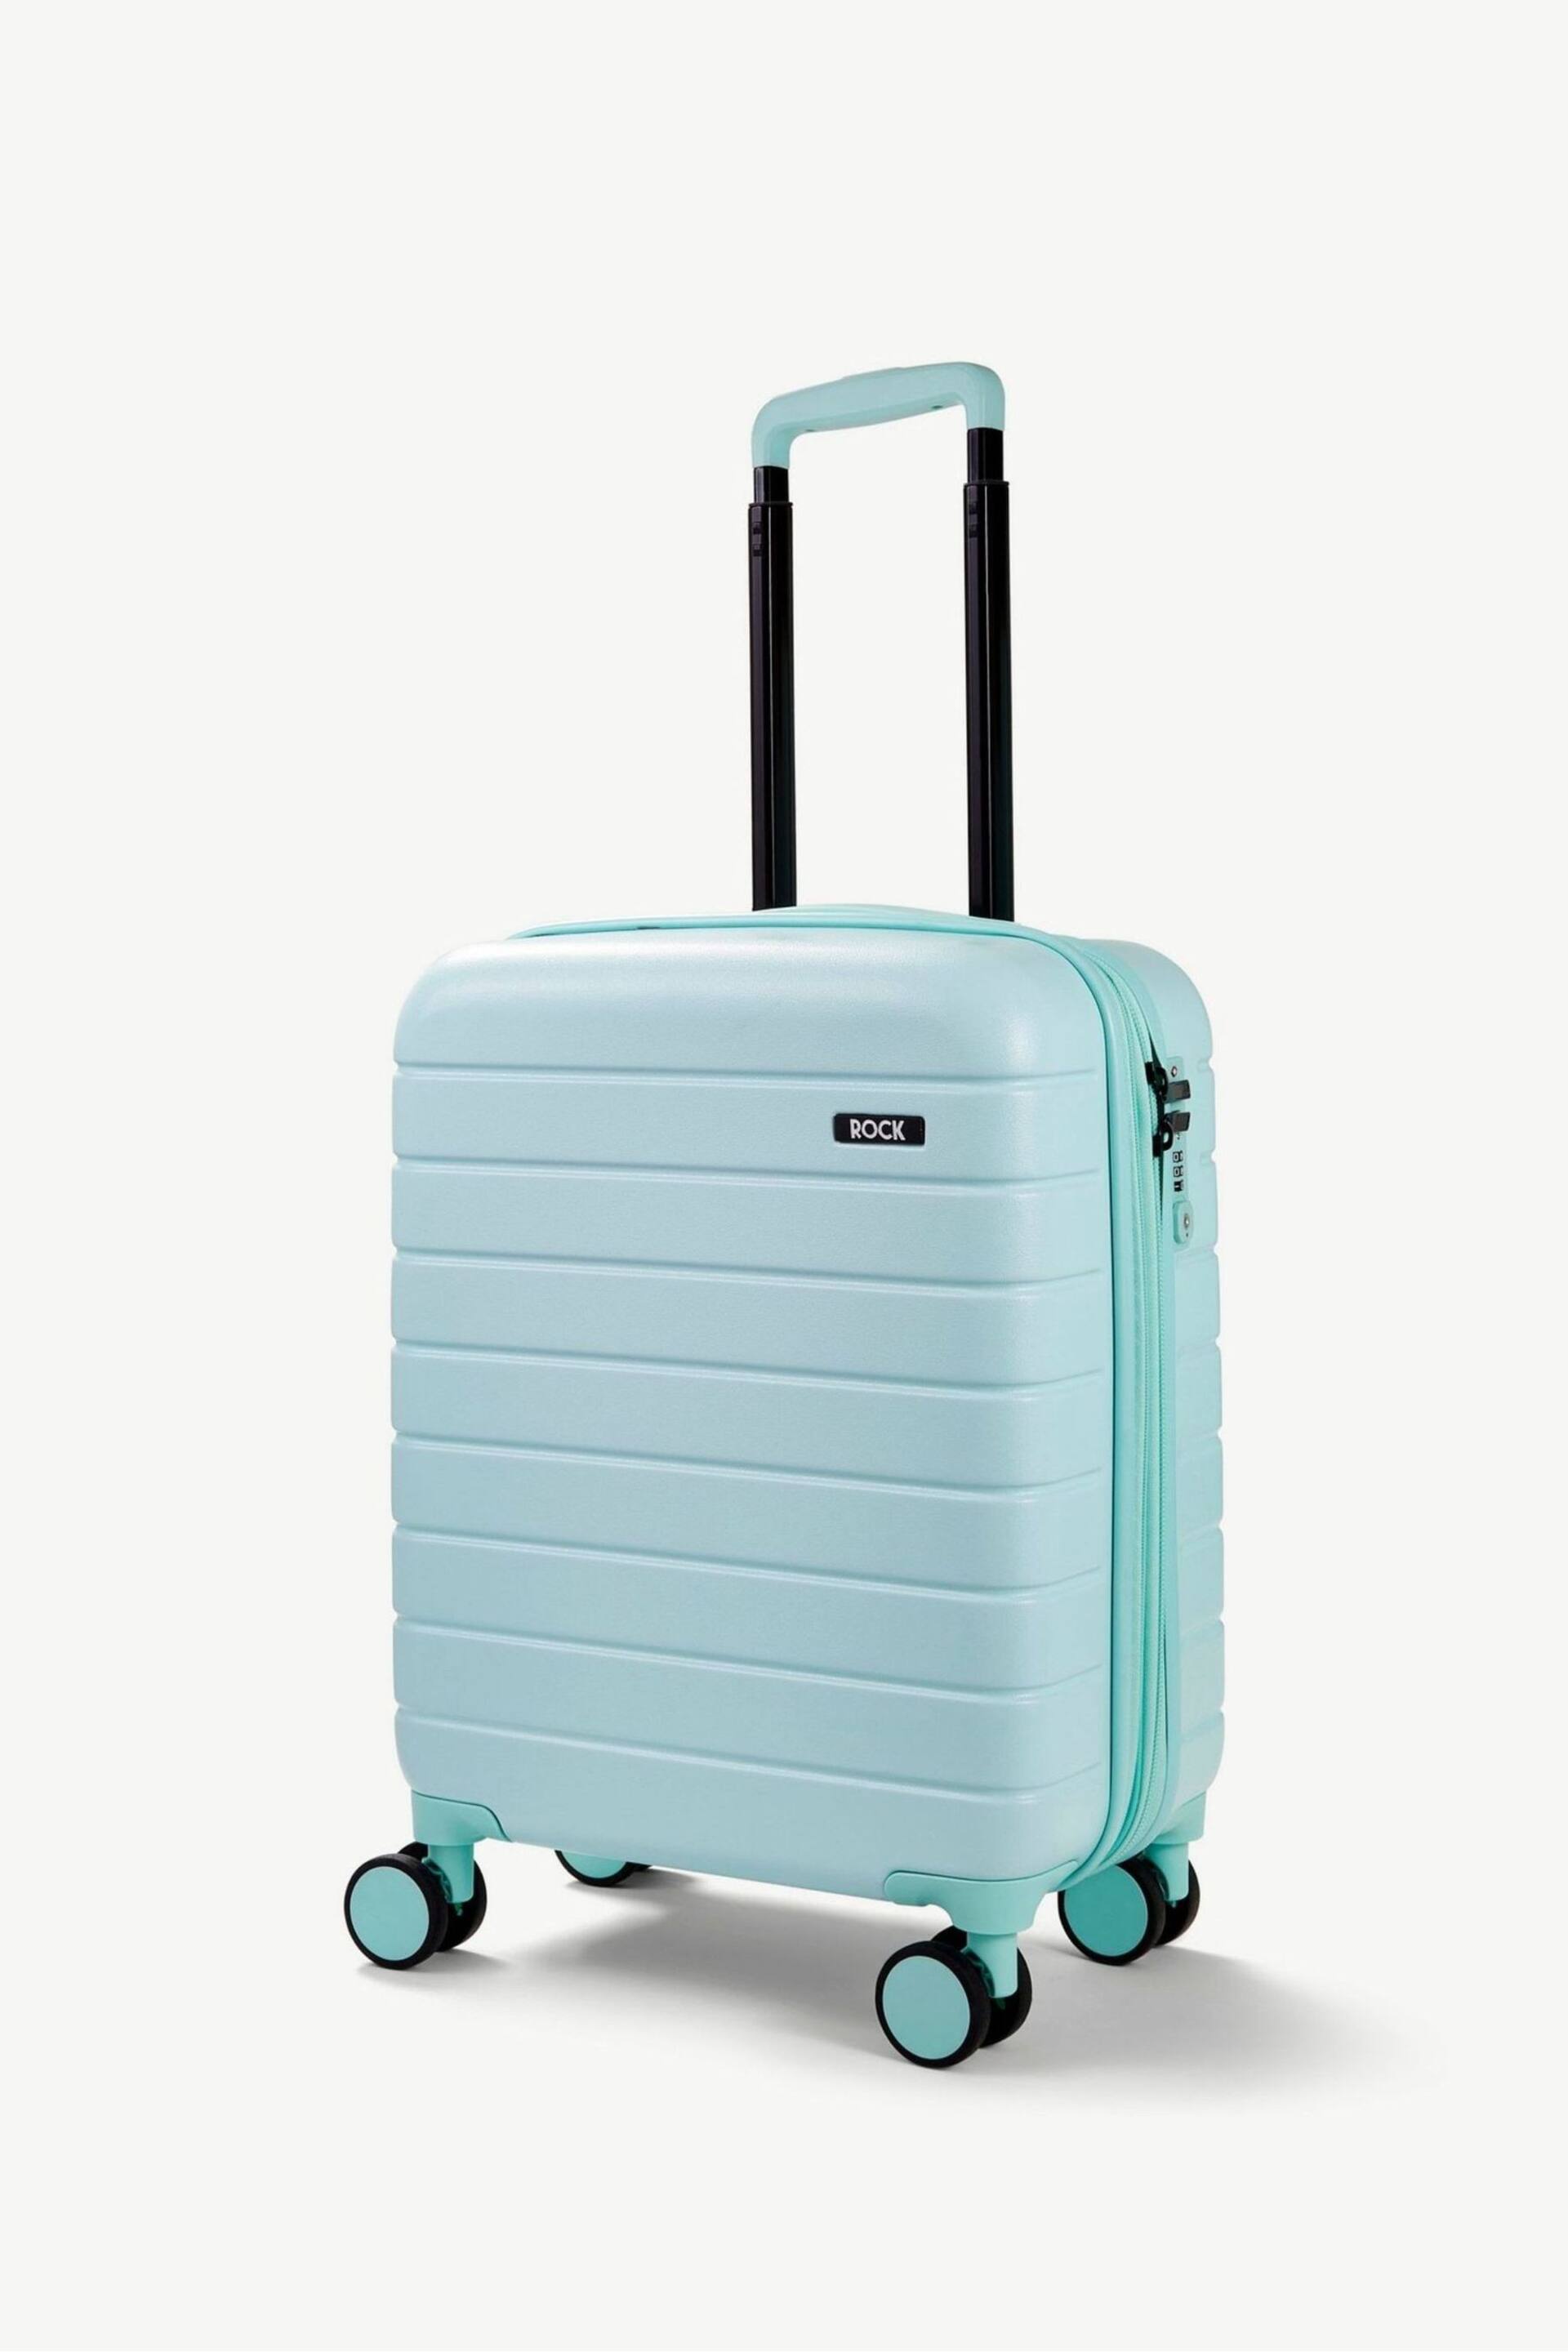 Rock Luggage Novo Cabin Suitcase - Image 1 of 7